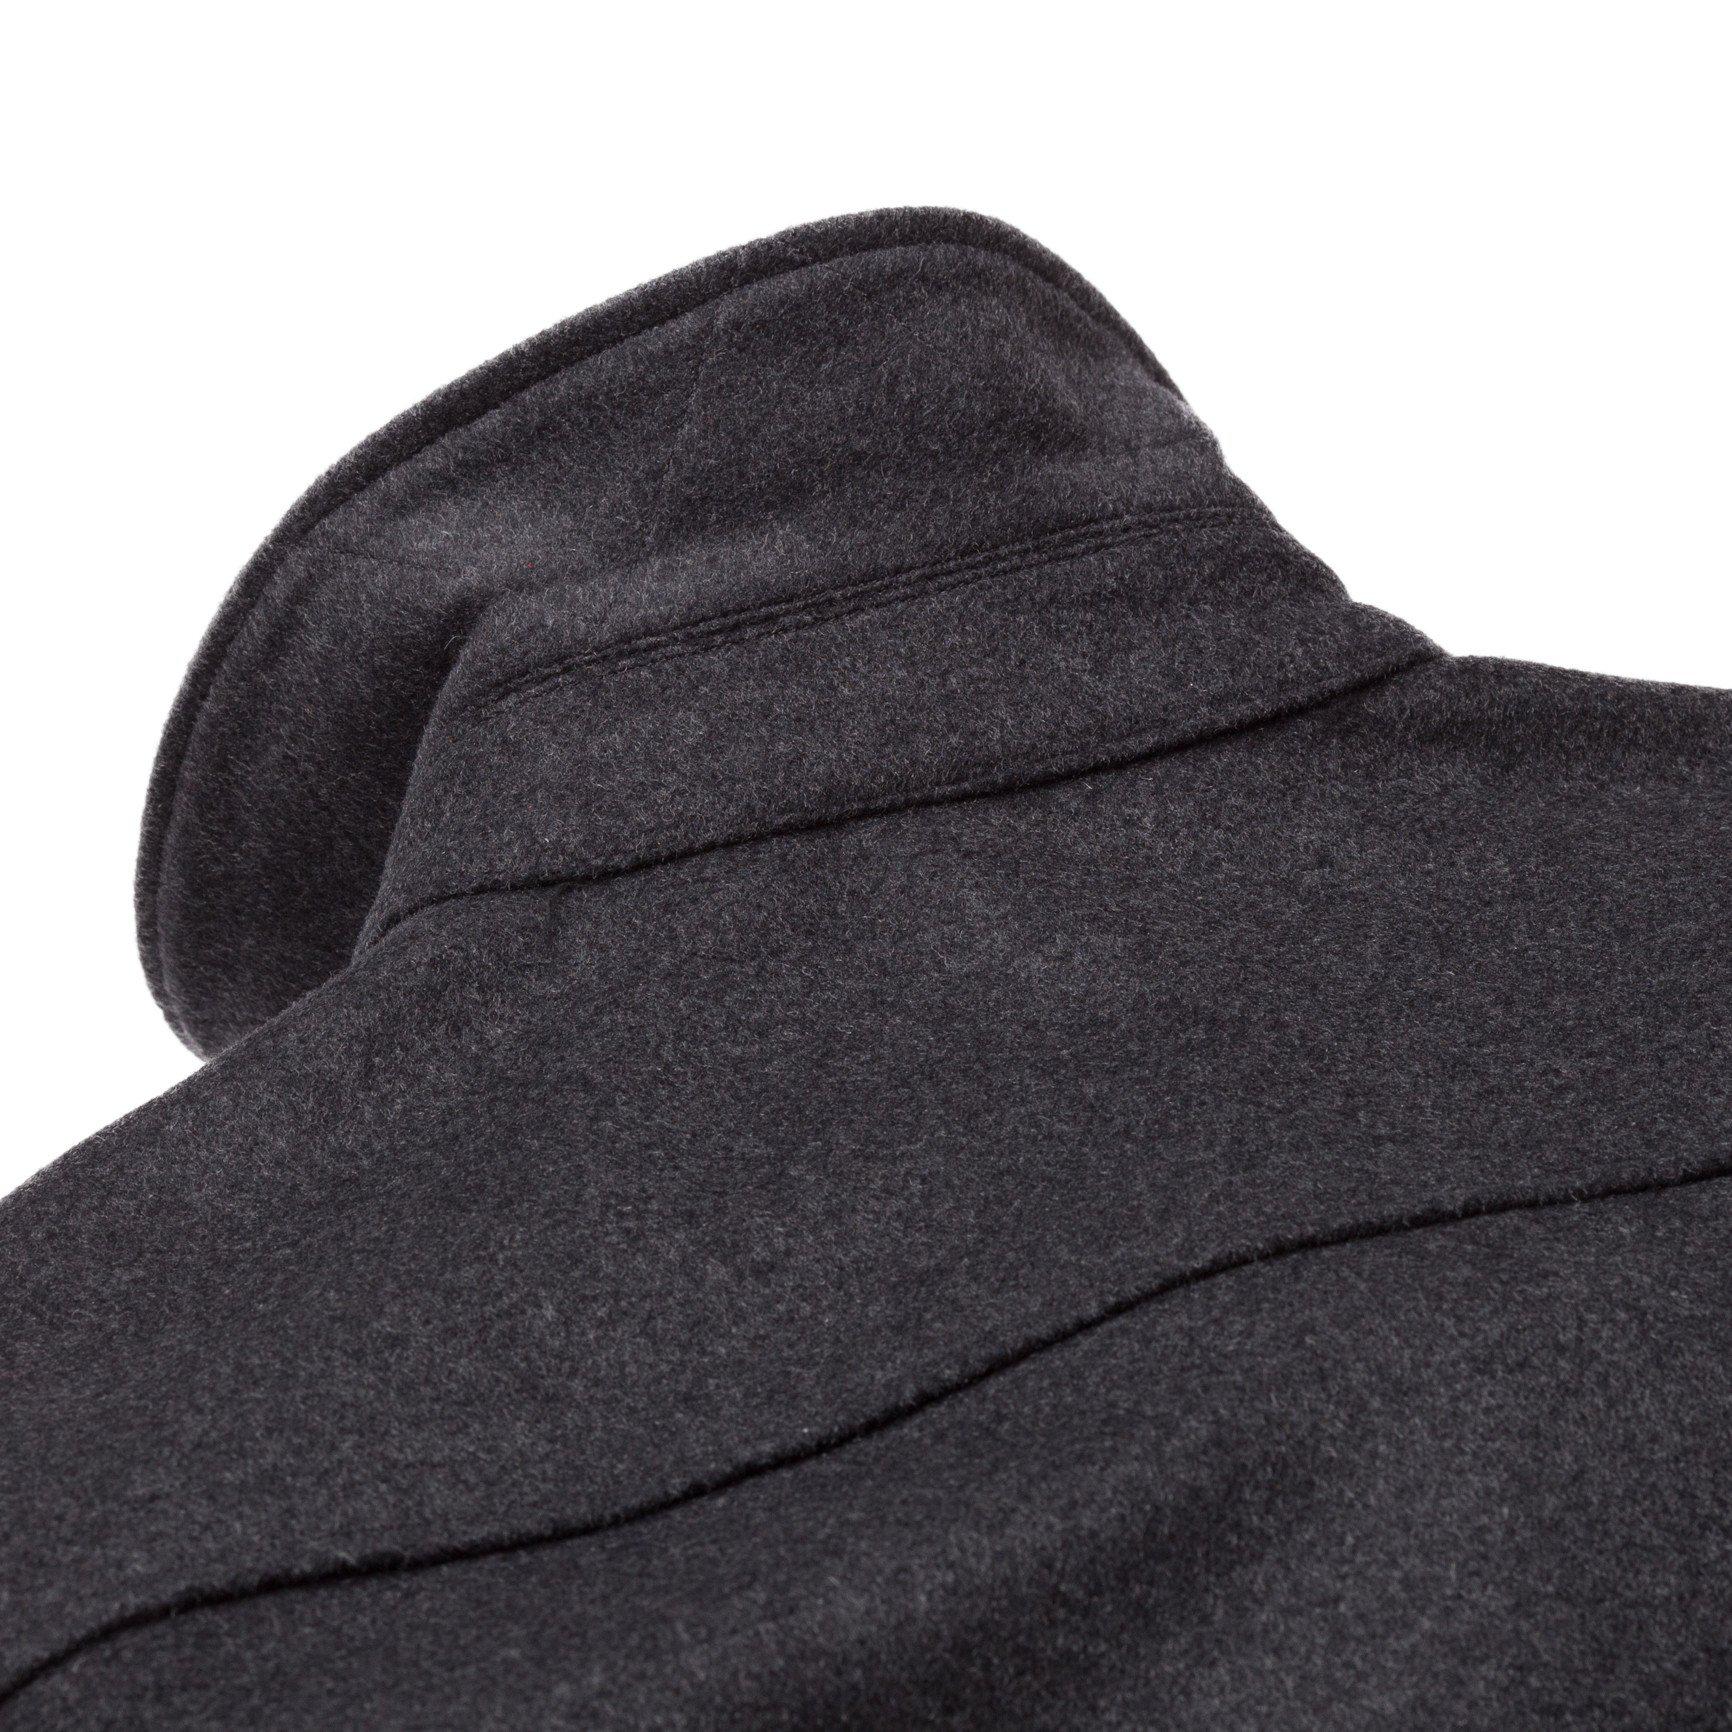 Corridor NYC Wool Zip Jacket in Black for Men - Lyst